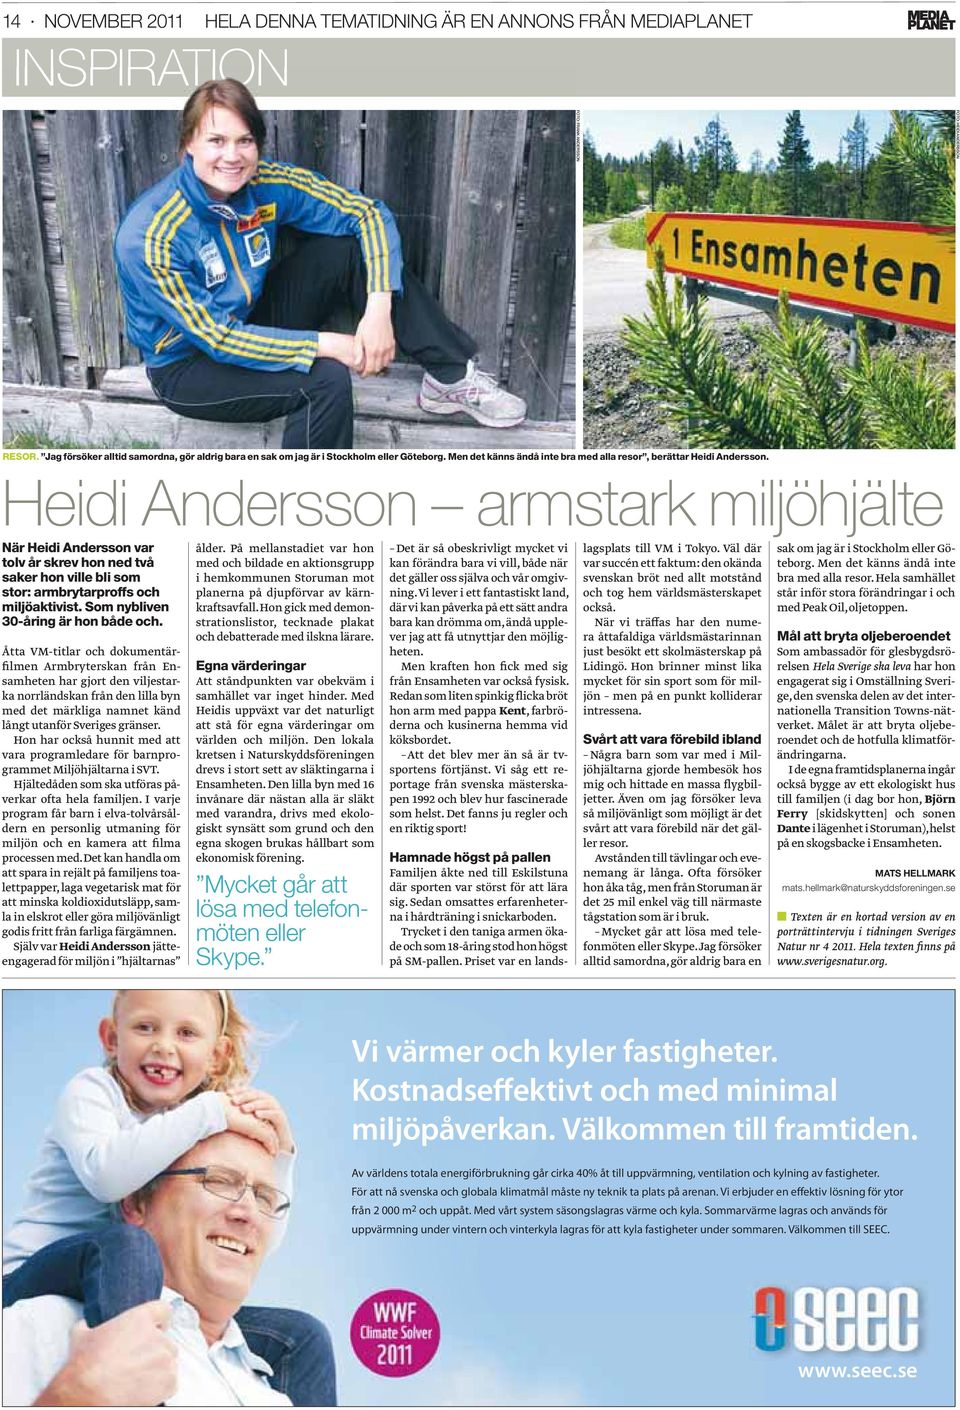 Heidi Andersson armstark miljöhjälte När Heidi Andersson var tolv år skrev hon ned två saker hon ville bli som stor: armbrytarproffs och miljöaktivist. Som nybliven 30-åring är hon både och.